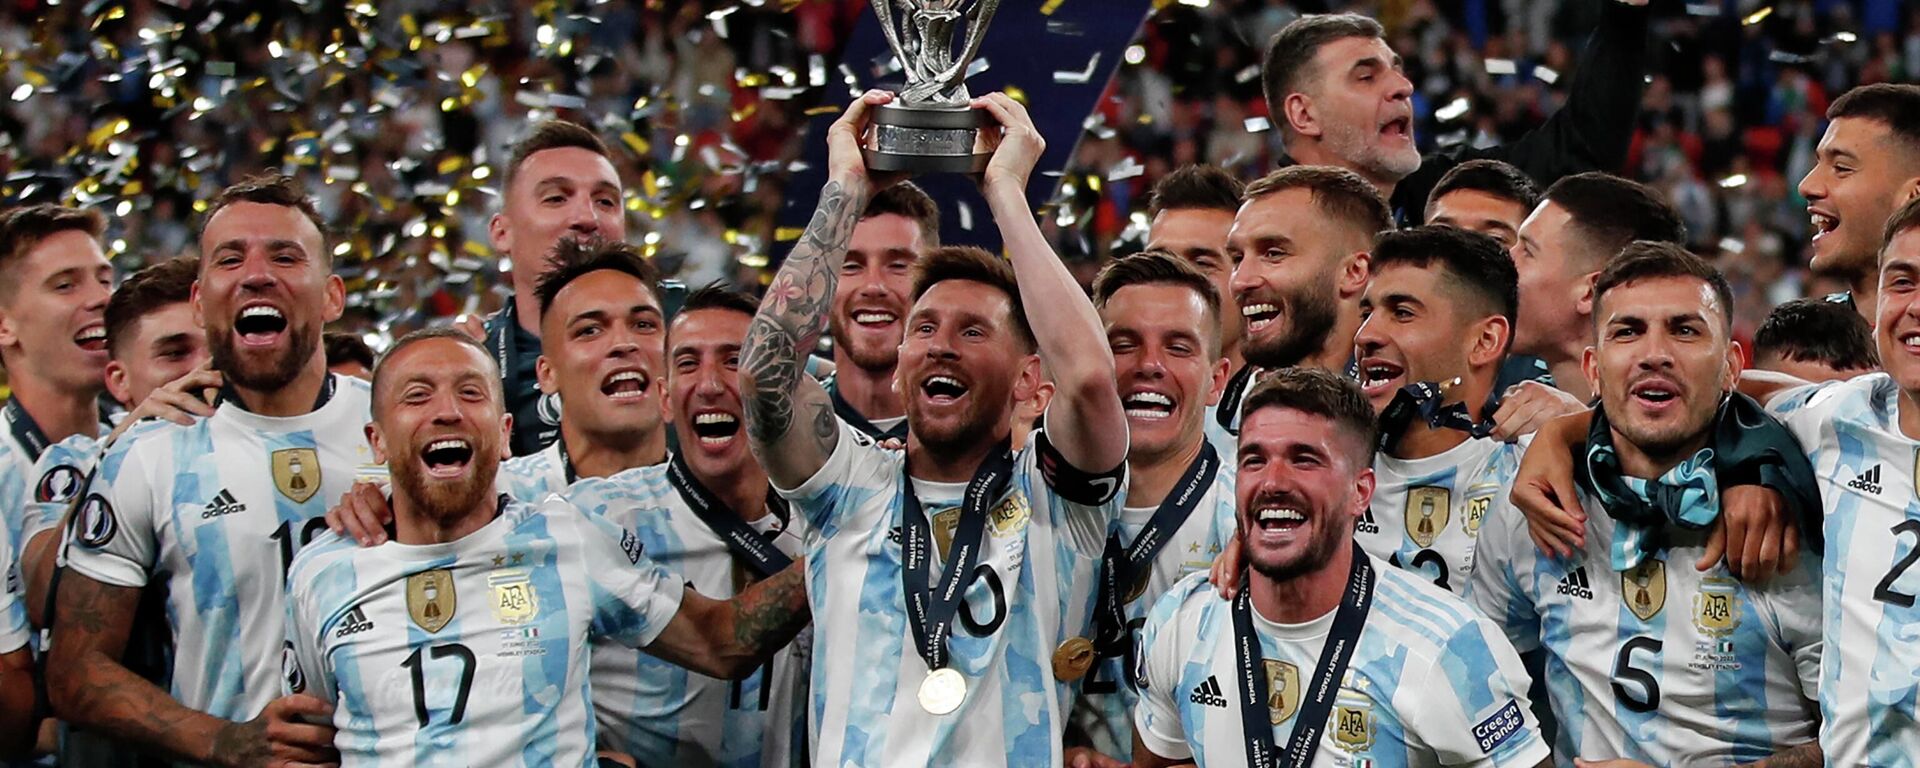 Argentina le gana la Copa Finalissima de fútbol a Italia por goleada, el 1 de junio del 2022 - Sputnik Mundo, 1920, 01.06.2022